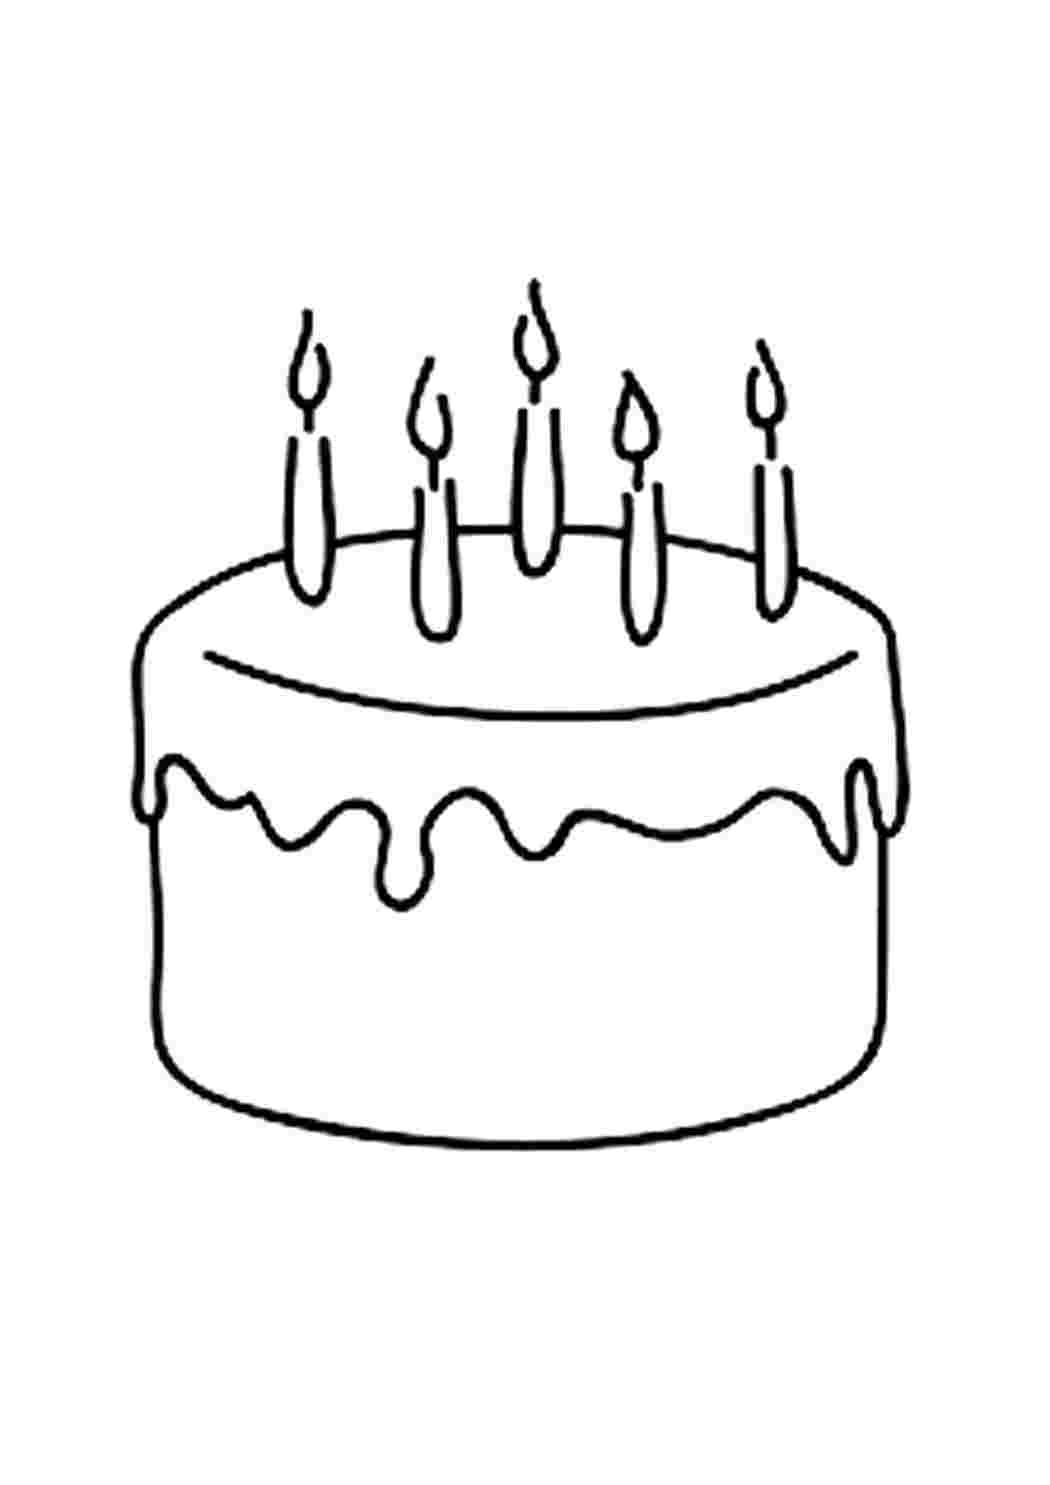 Рисунок тортика на день рождения